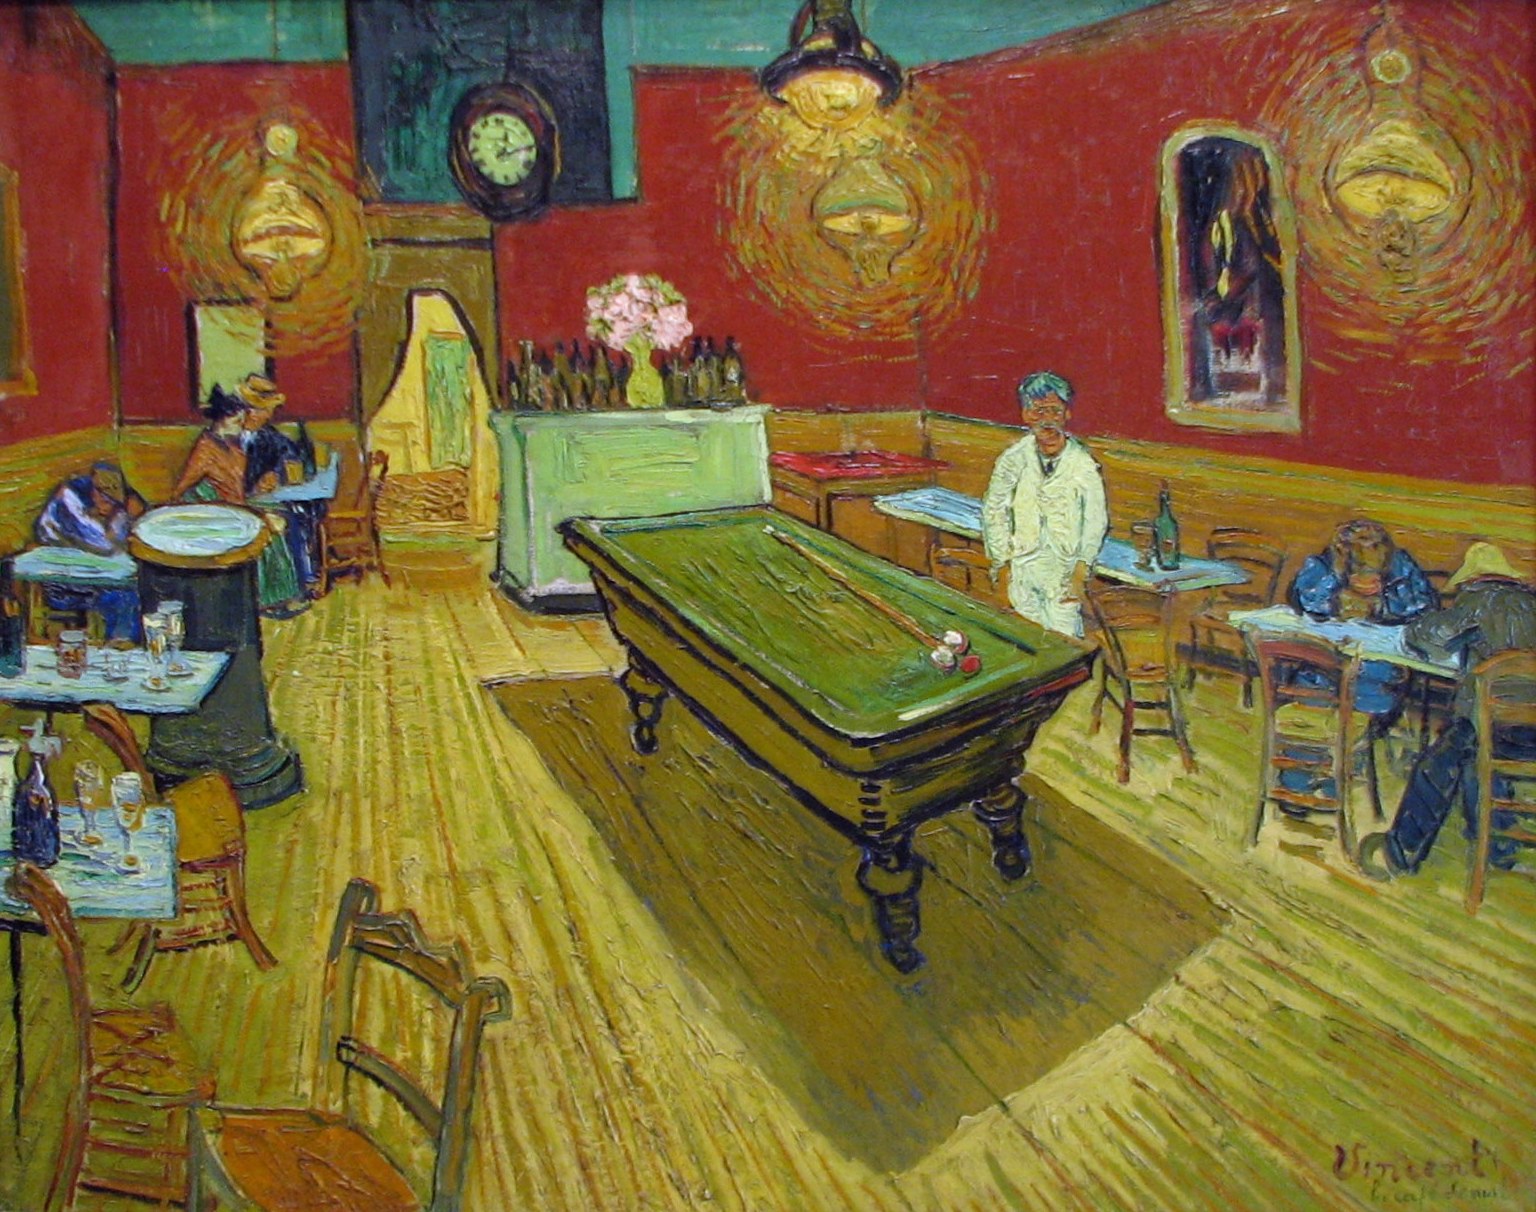 ¿Cómo sería darse una vuelta por un cuadro de Van Gogh?